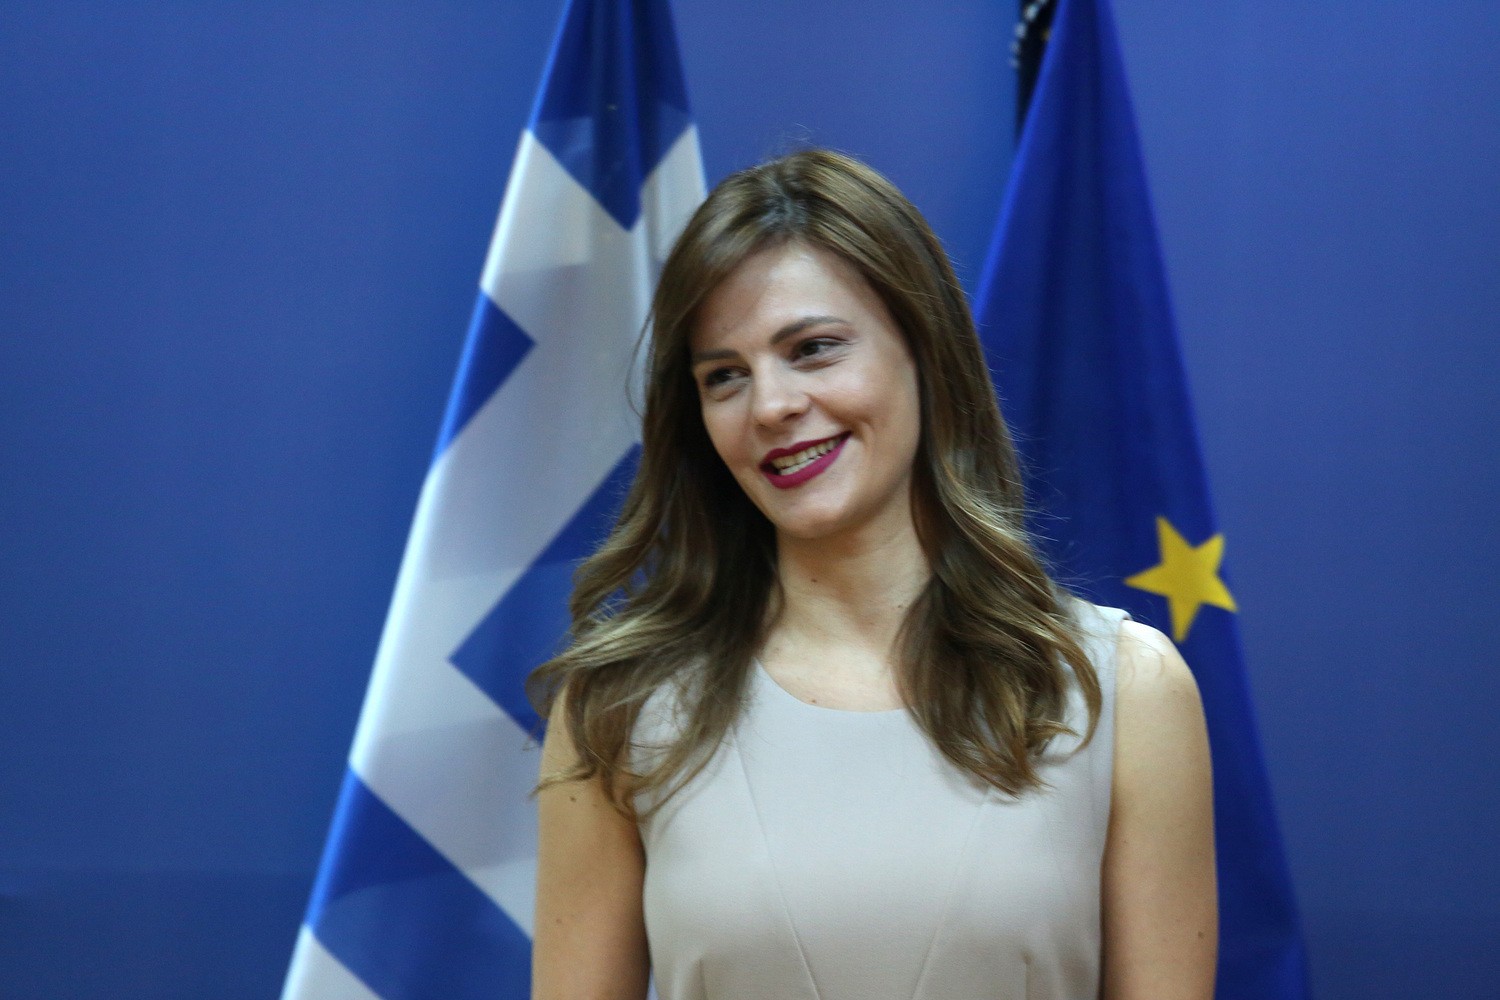 Ε.Αχτσιόγλου: «Ο ΣΥΡΙΖΑ είναι κόμμα της ριζοσπαστικής αριστεράς, όχι της κεντροαριστεράς»